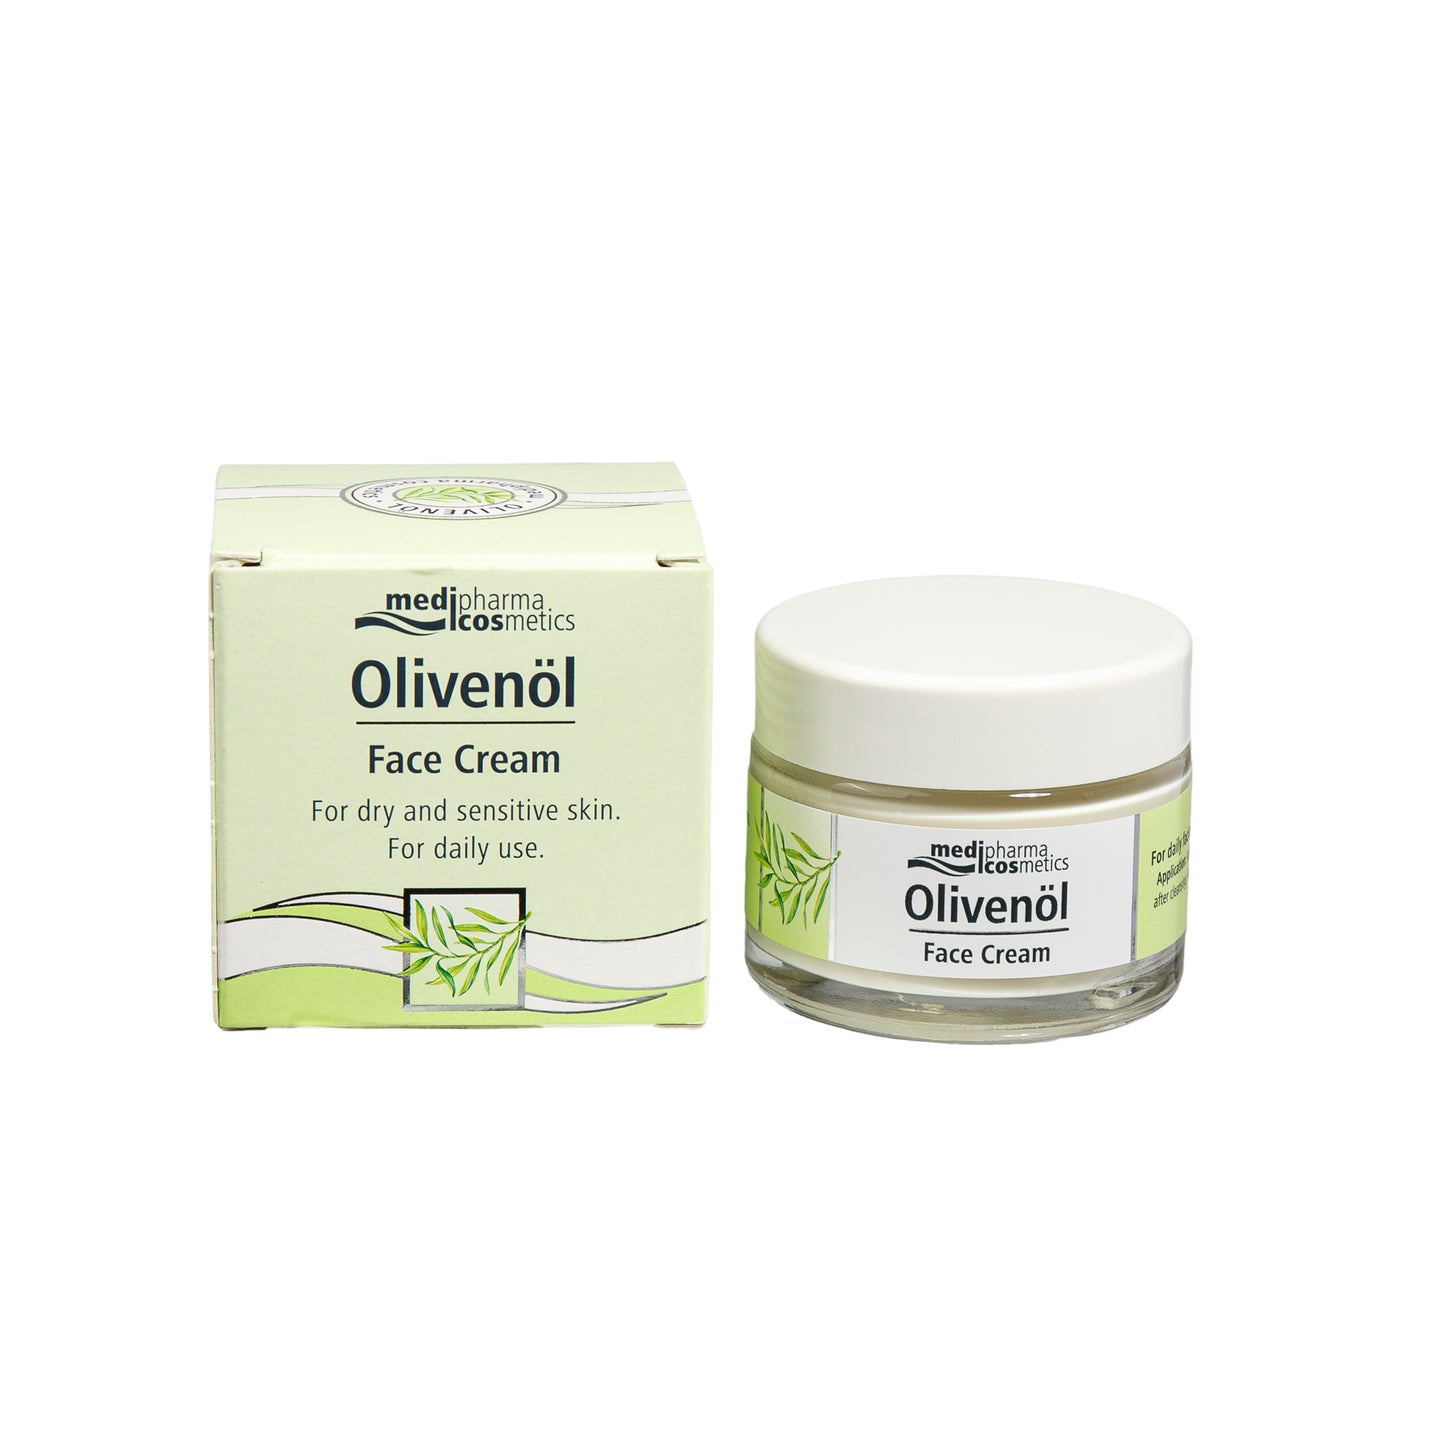 Primary Image of Olivenol Face Cream